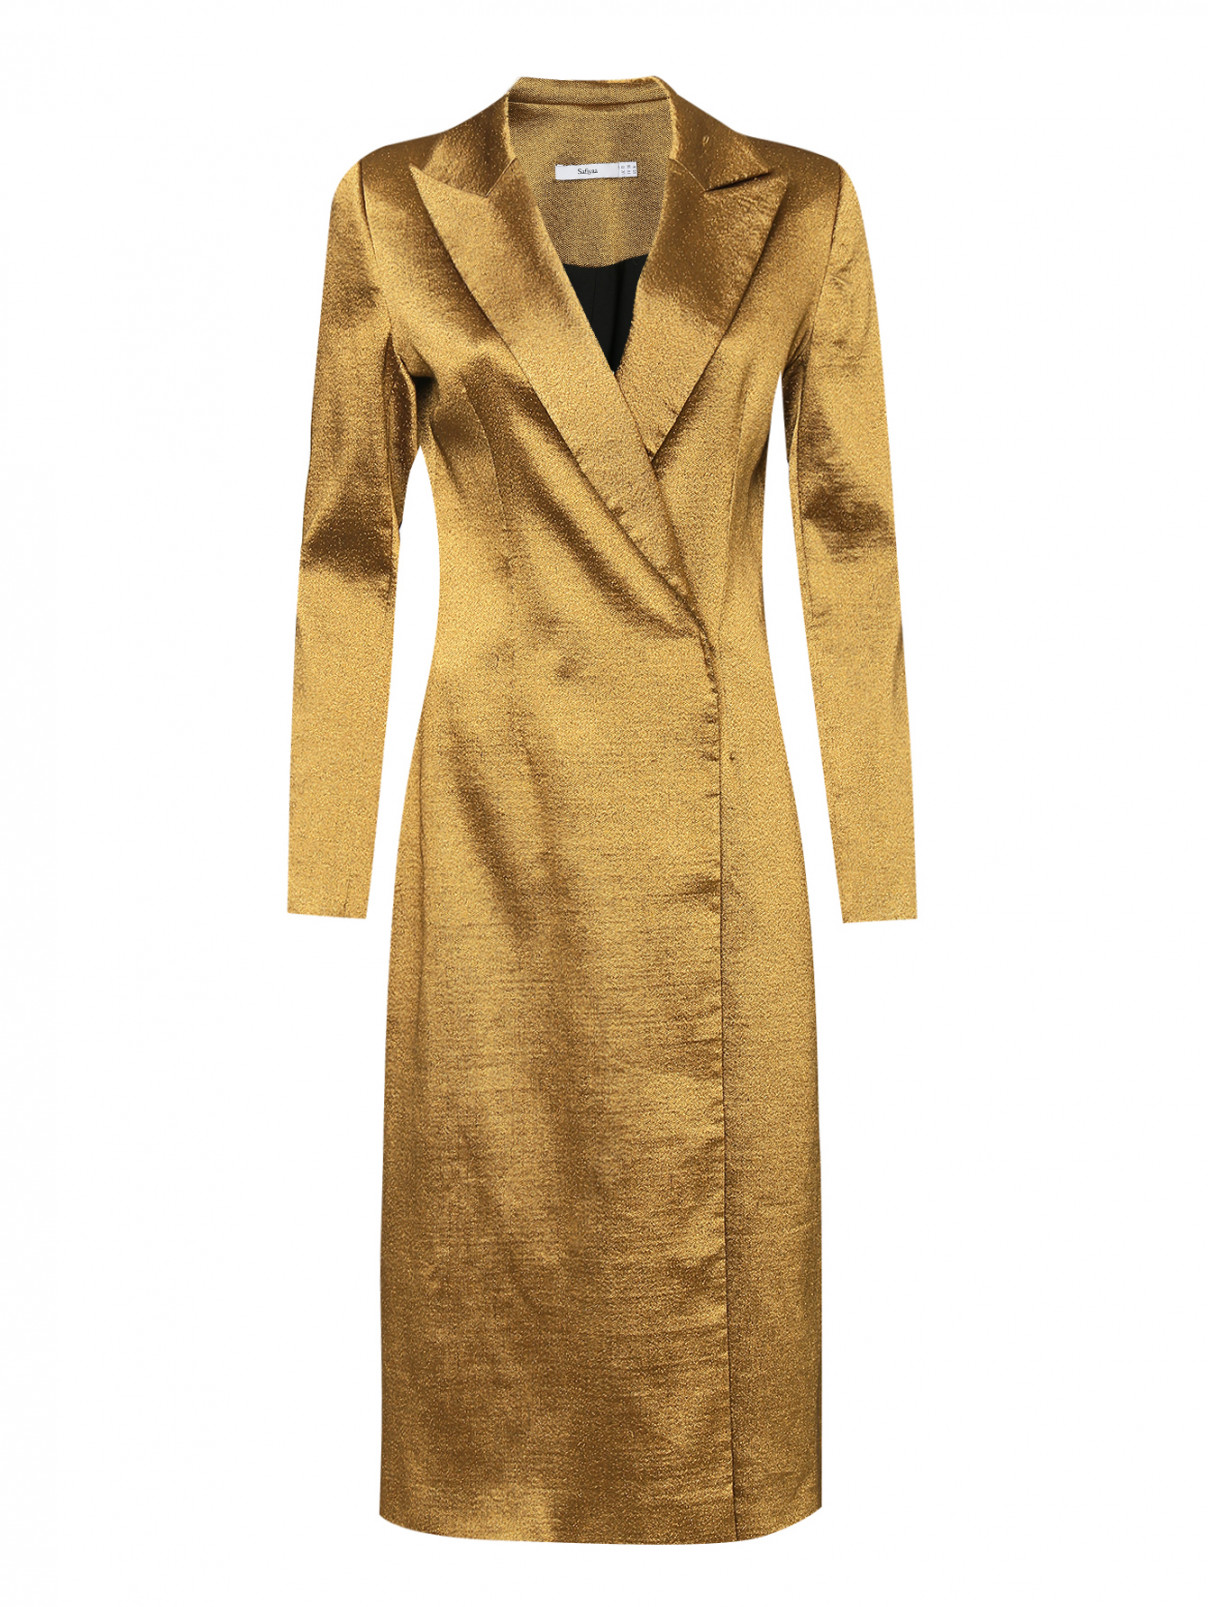 Пальто с металлизированной нитью Safiyaa  –  Общий вид  – Цвет:  Золотой